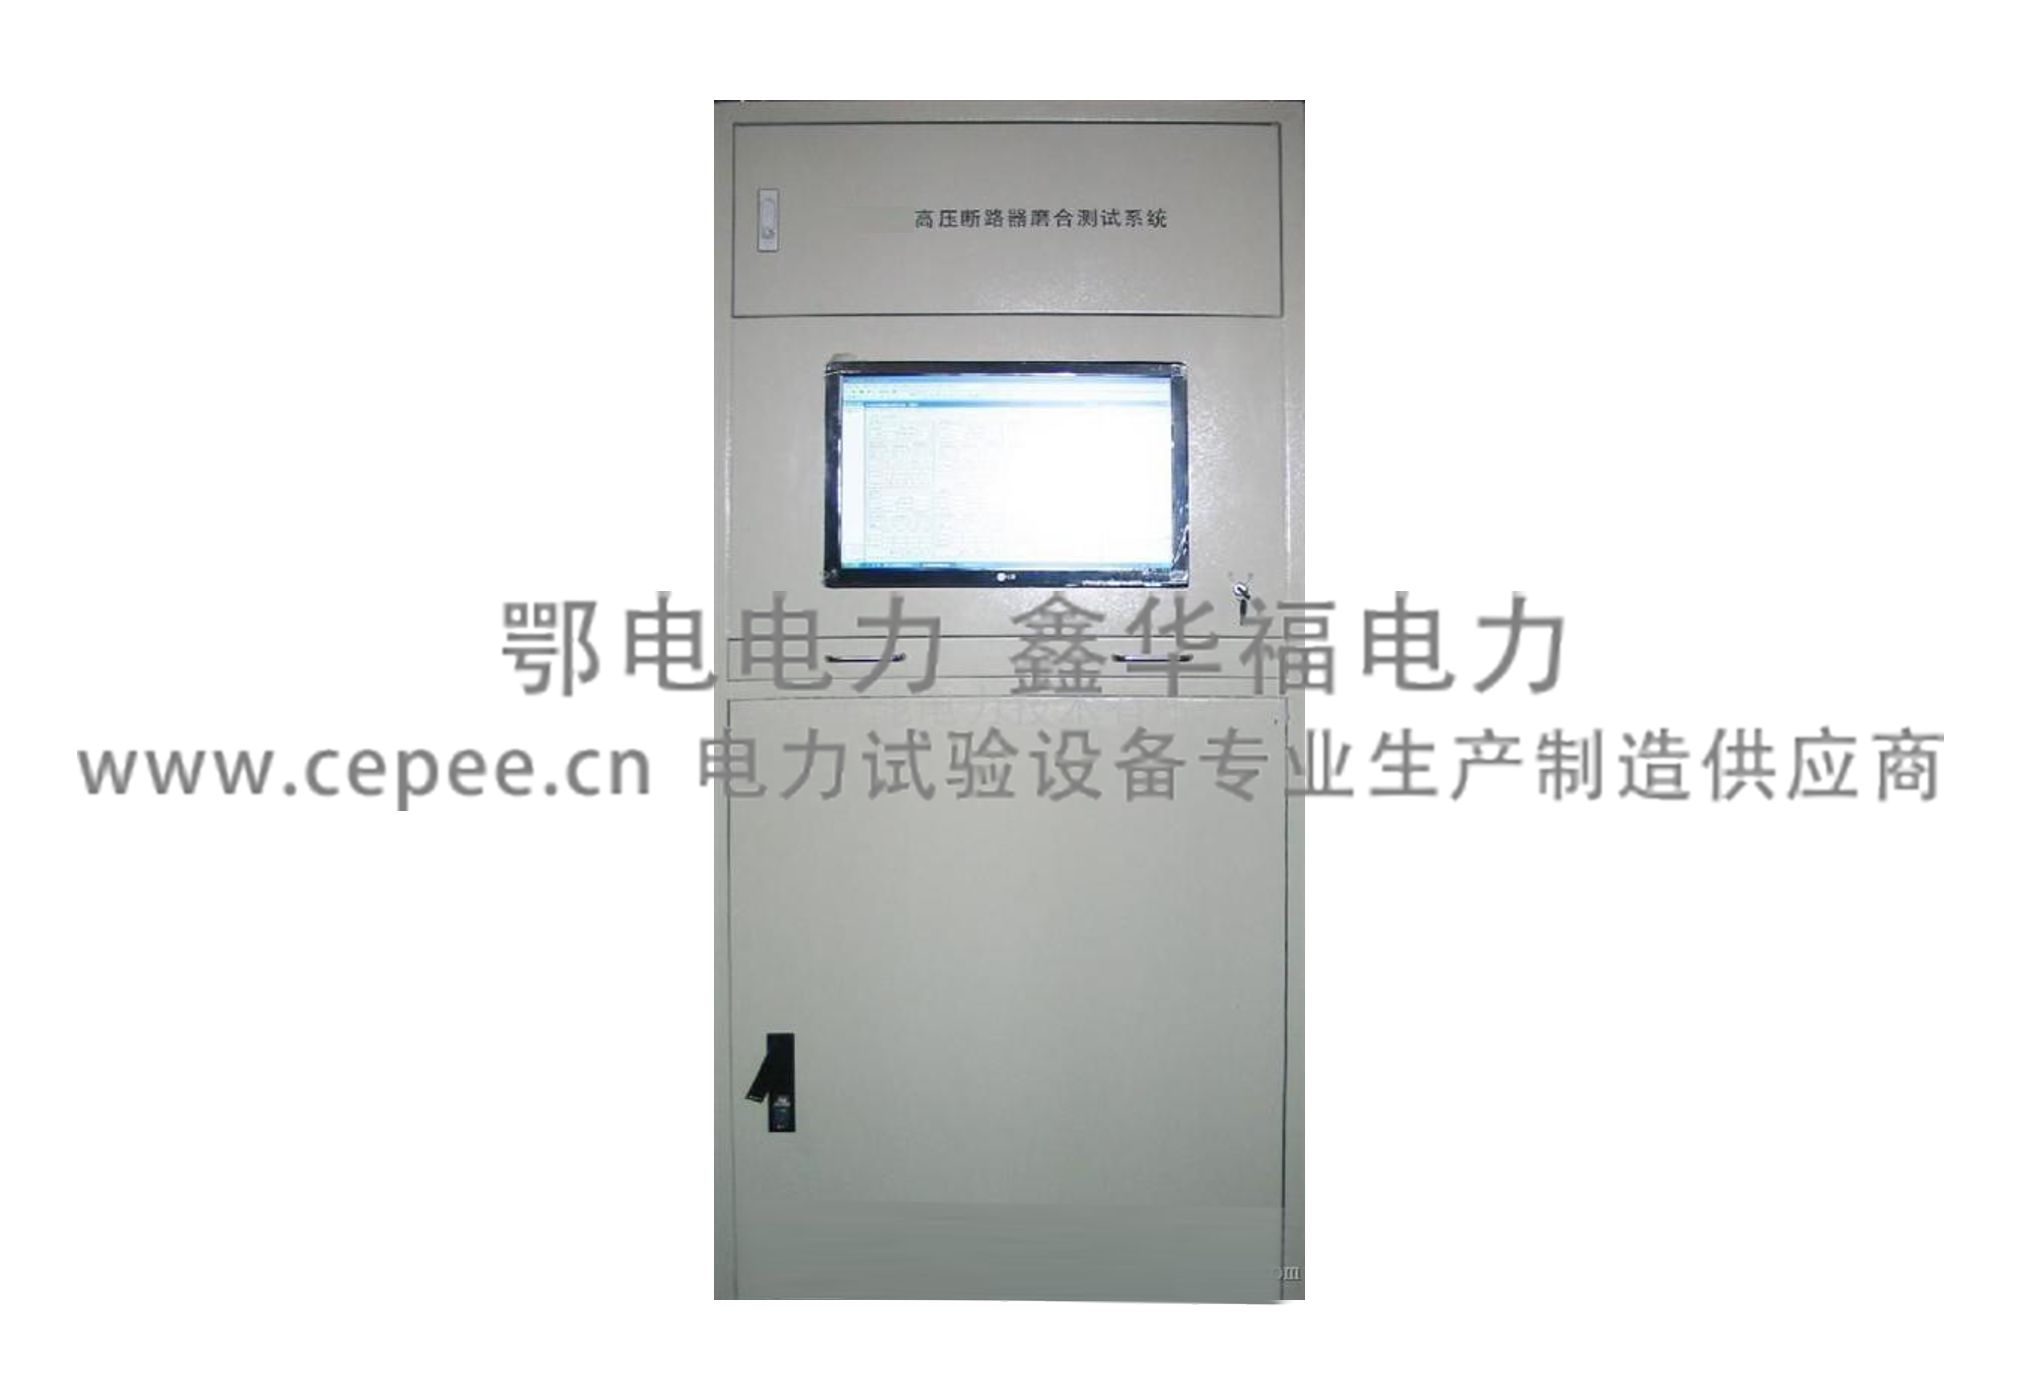 YJB-6002继电保护测试仪_单相-武汉鄂电电力试验设备有限公司